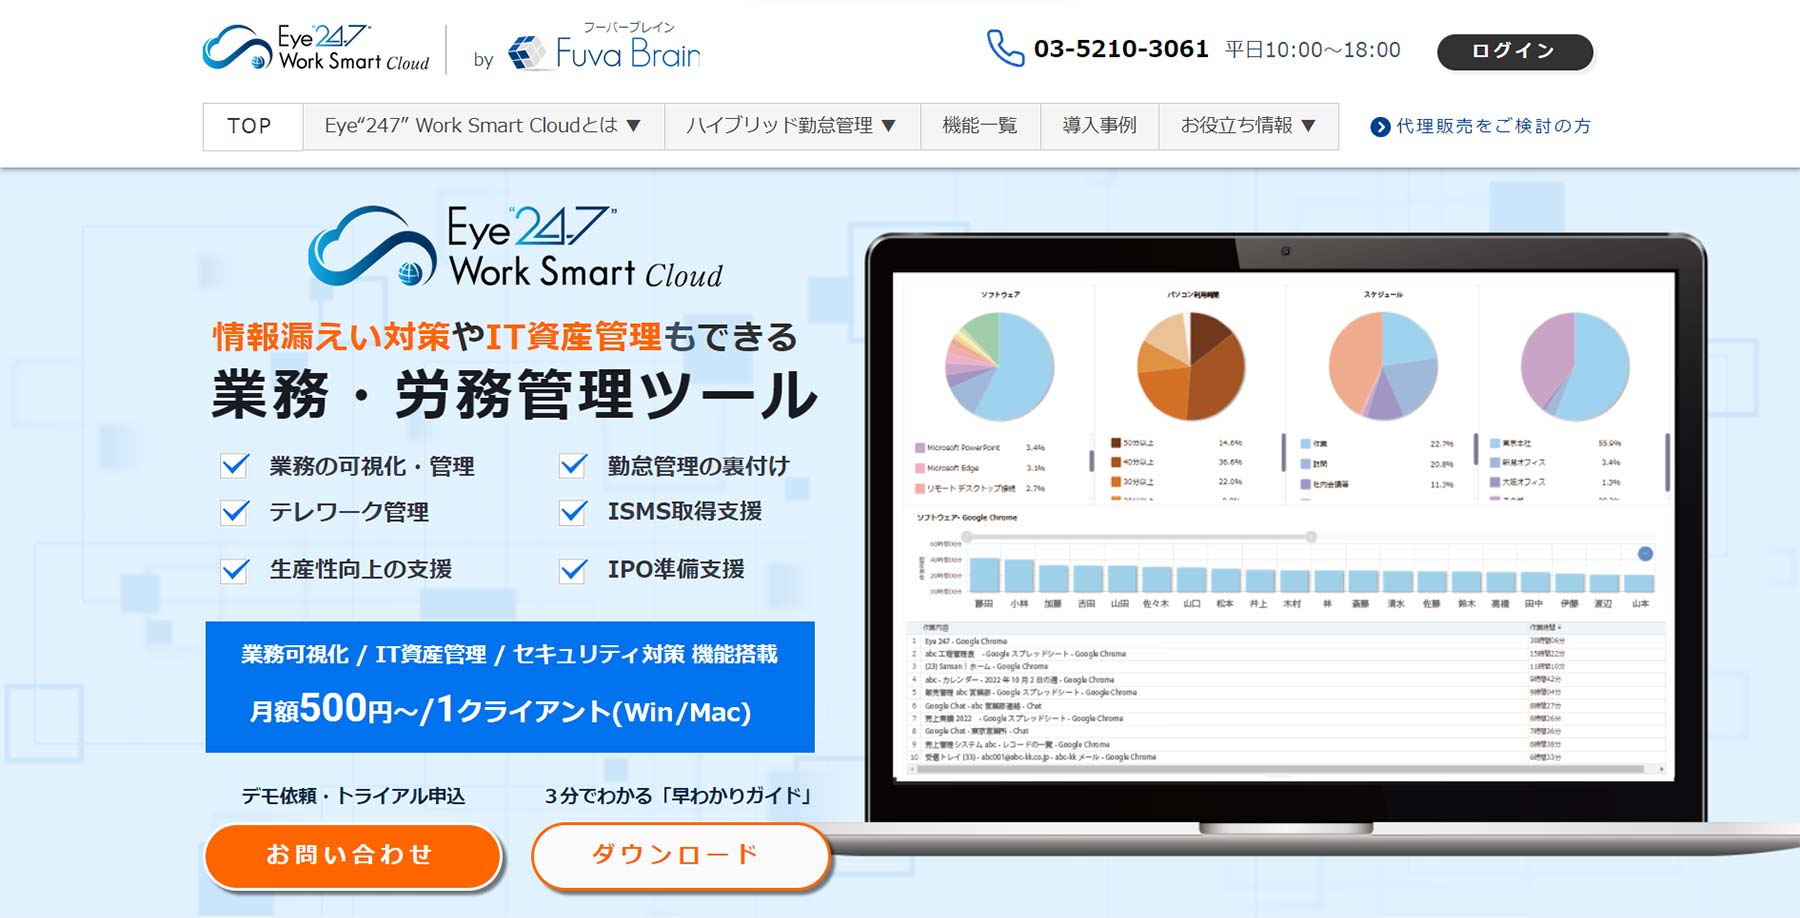 Eye“247” Work Smart Cloud公式Webサイト